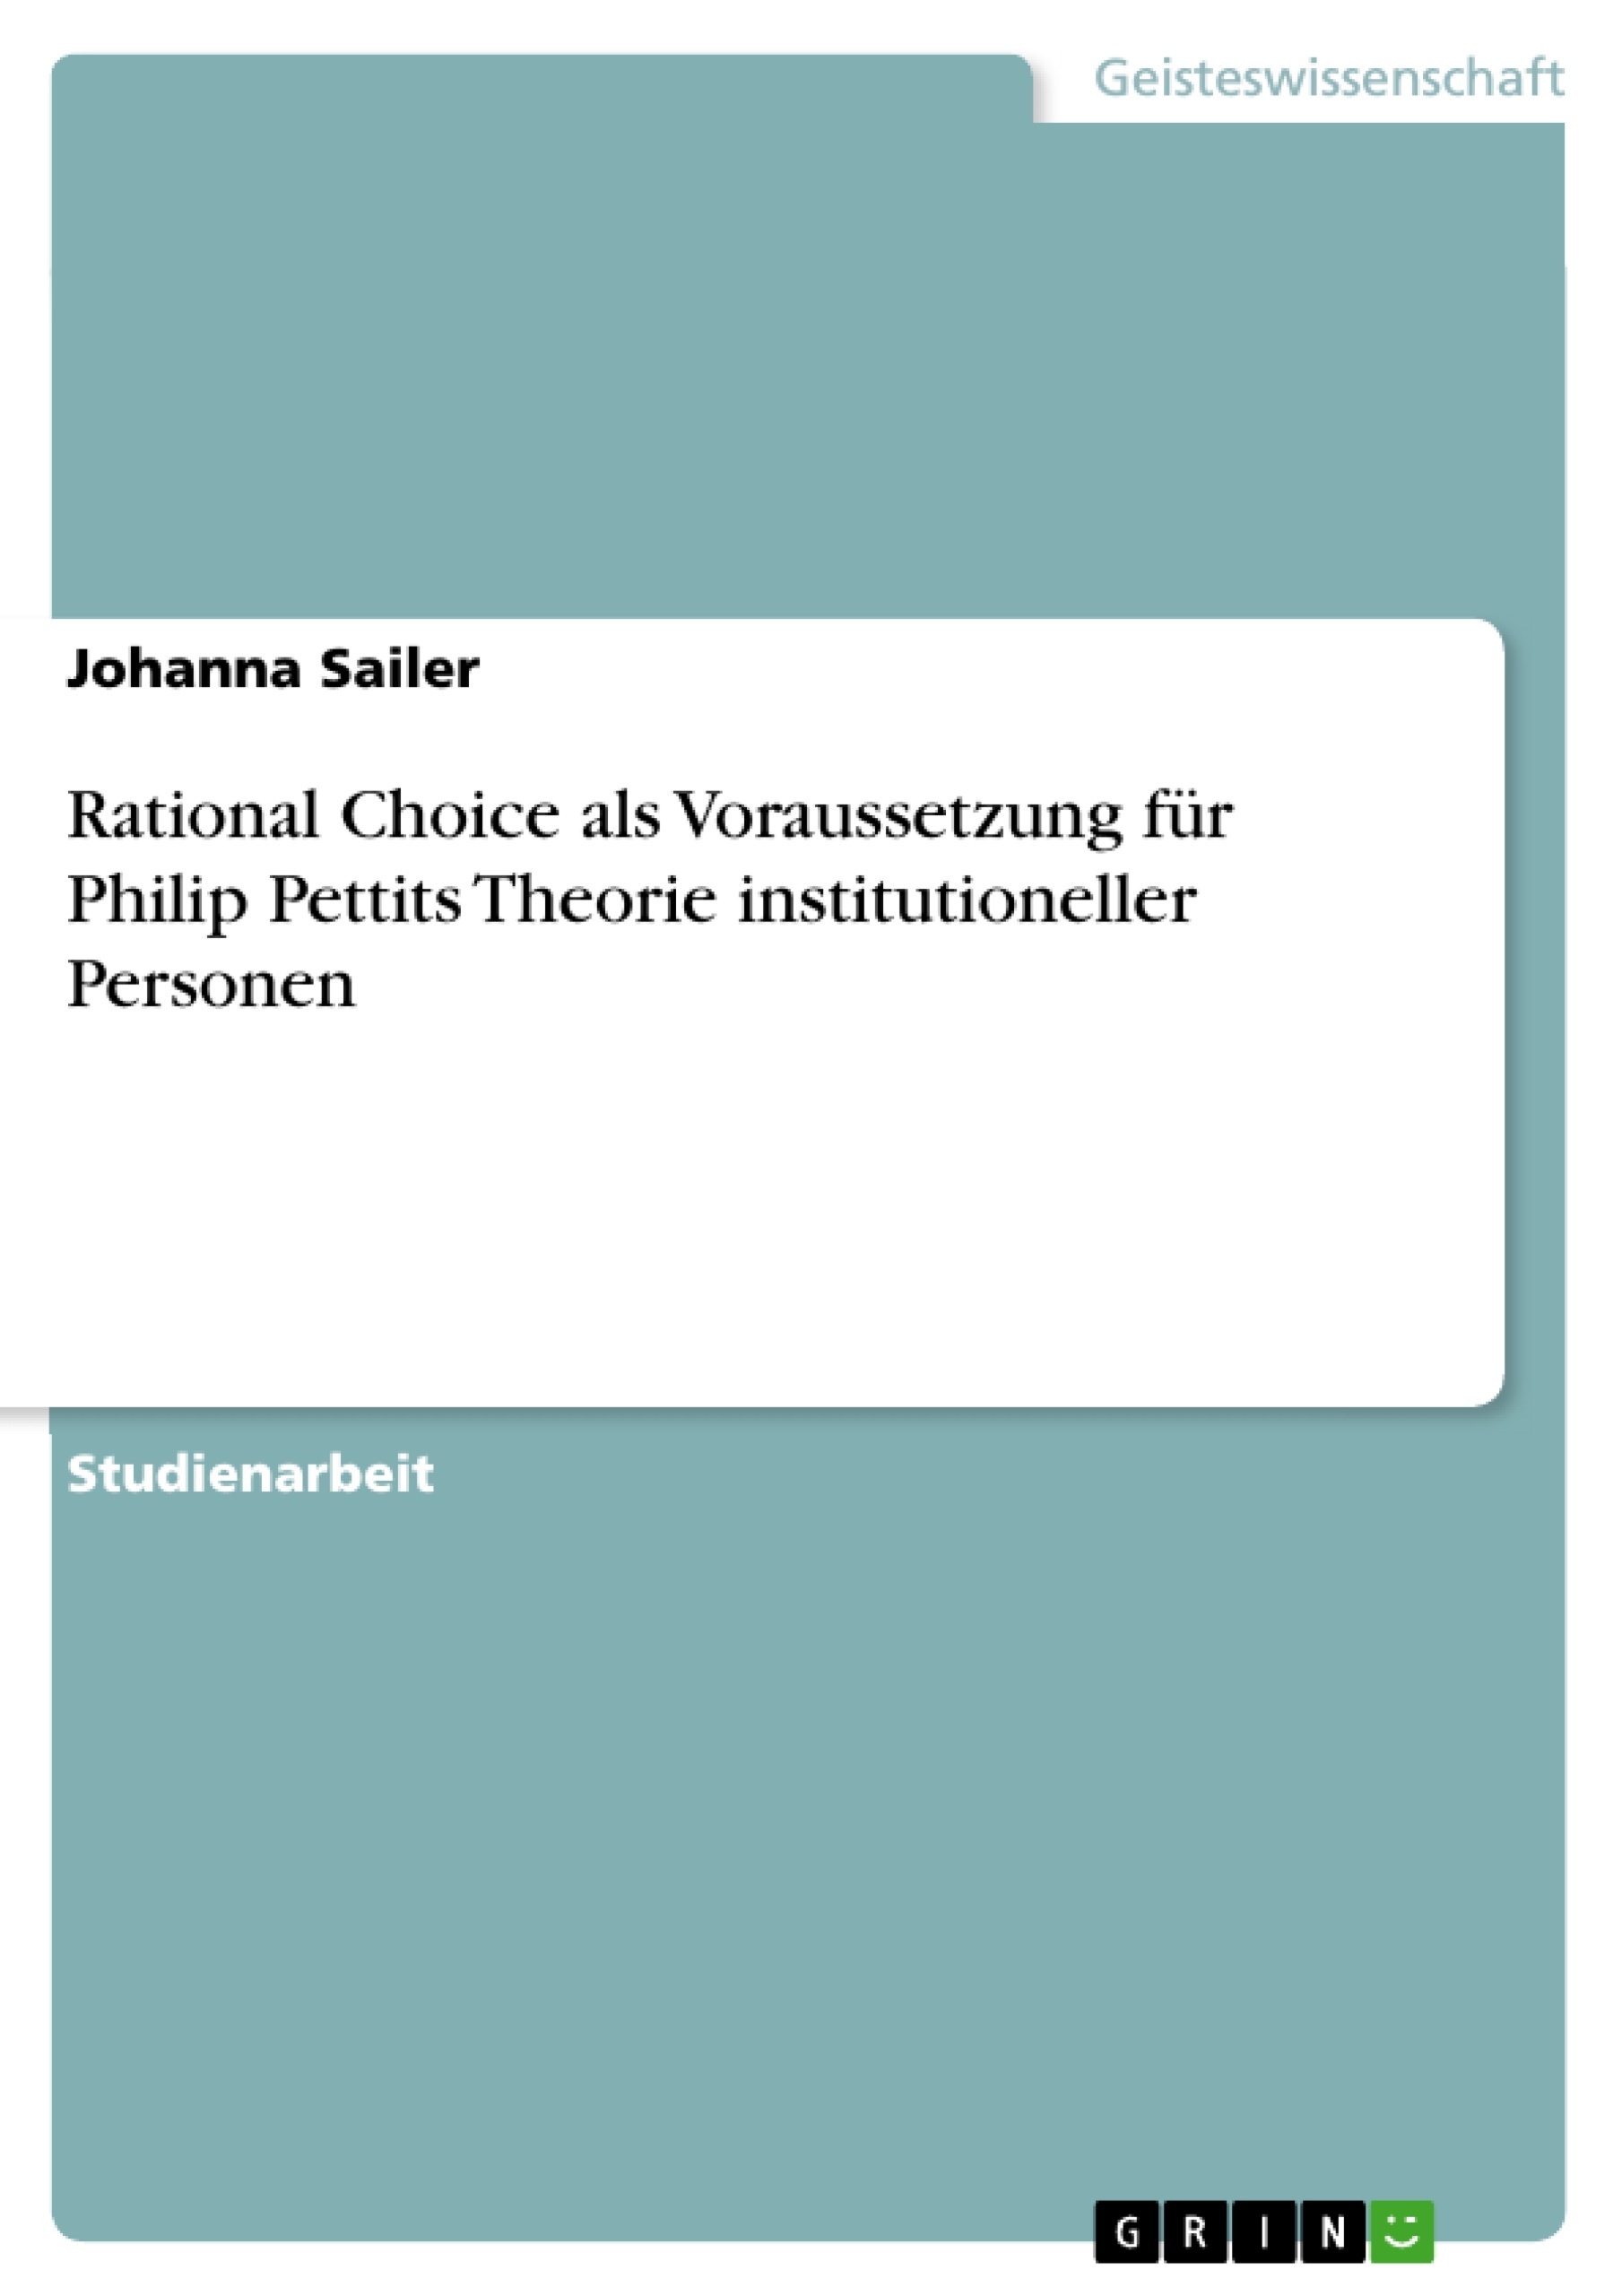 Título: Rational Choice als Voraussetzung für Philip Pettits Theorie institutioneller Personen